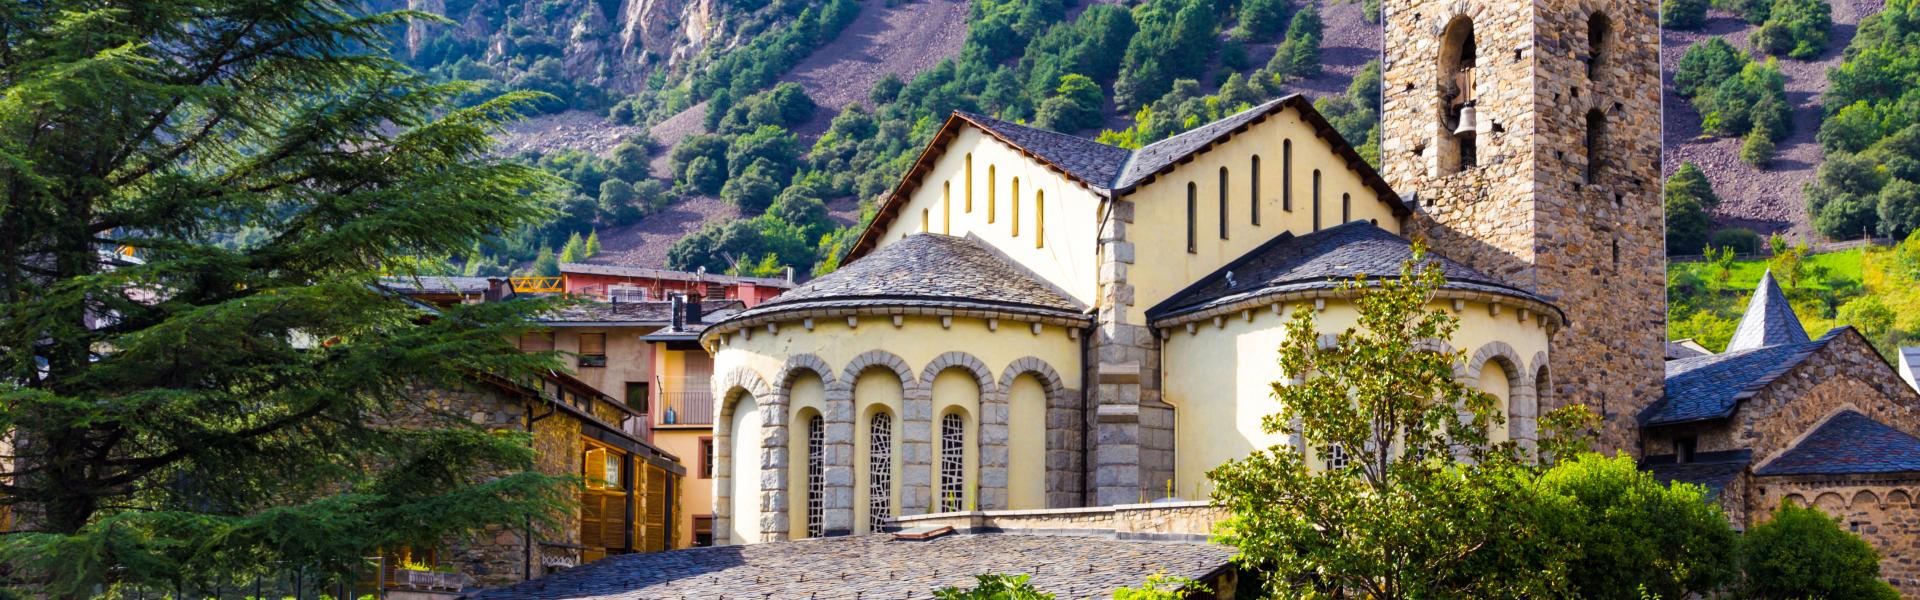 Ferienwohnungen & Ferienhäuser für Urlaub in Andorra - Casamundo